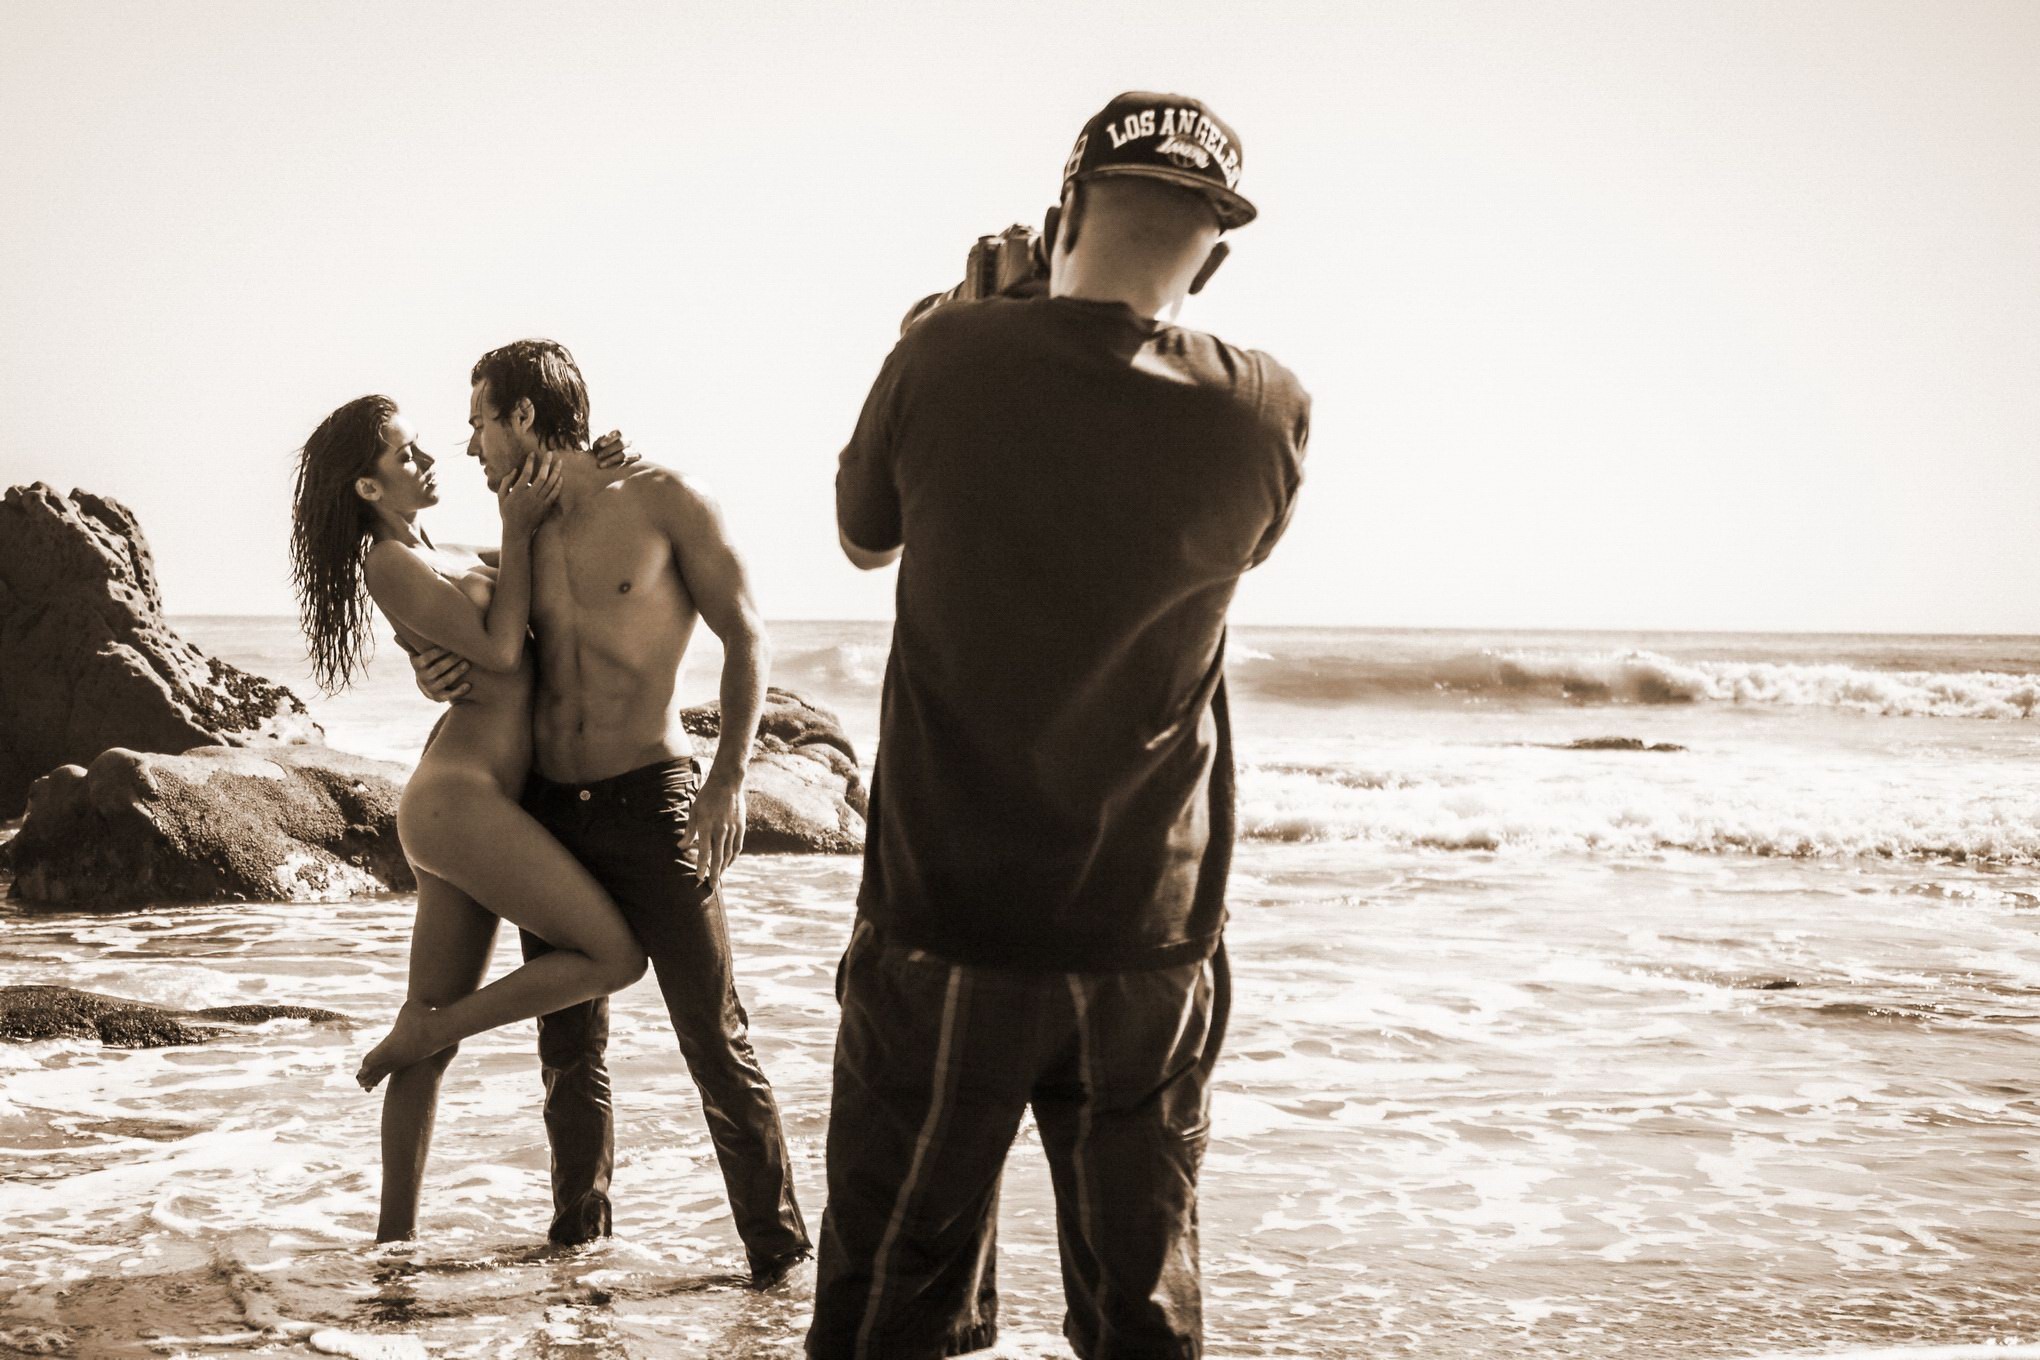 Jehane gigi paris totalmente desnuda acariciando en la playa photoshoot por steve shaw
 #75181139